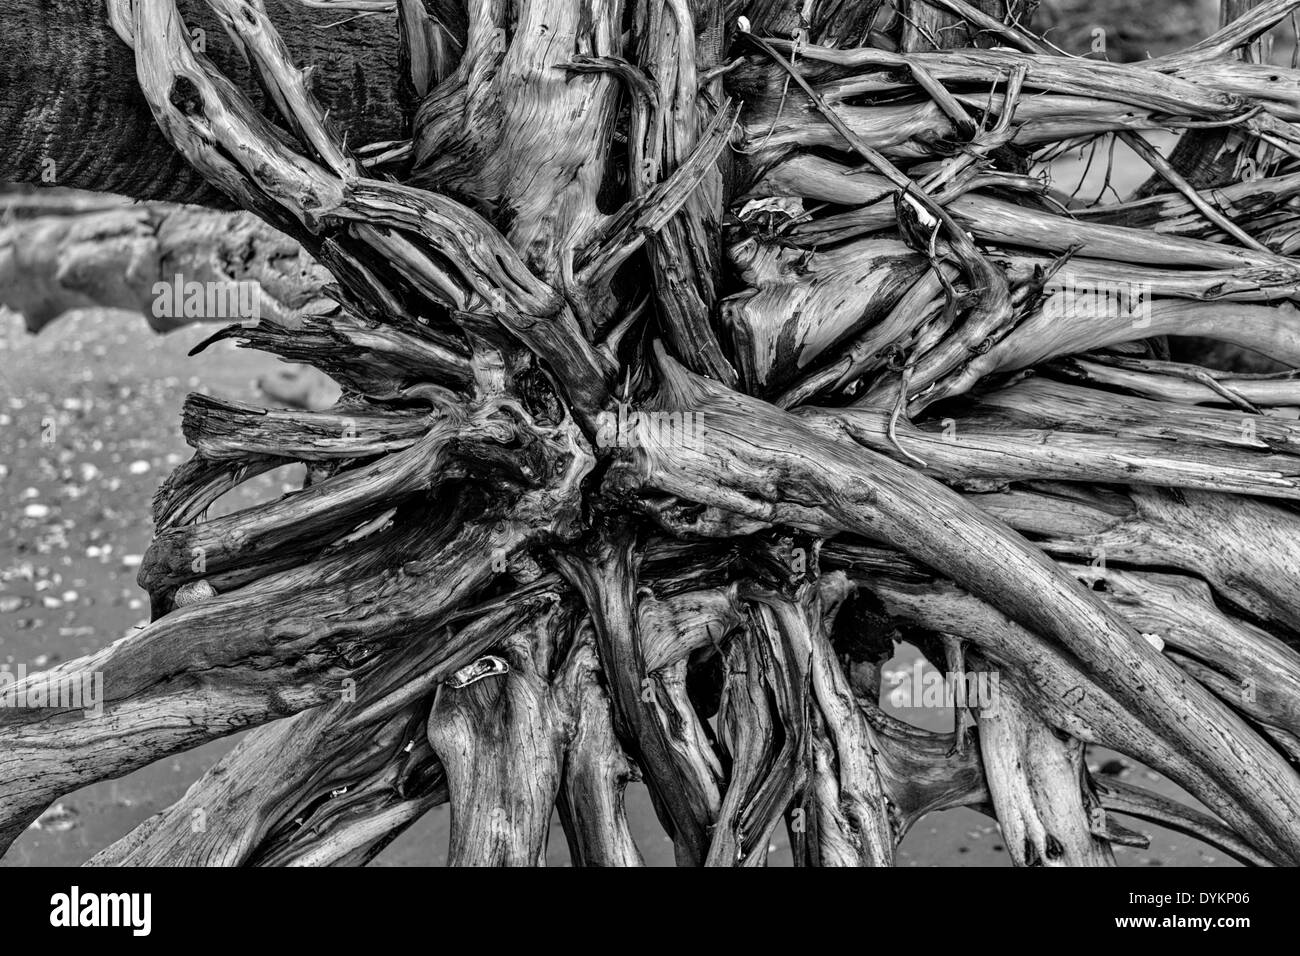 Treibholz-Bäumen entlang Boneyard Strand von Botany Bay, Edisto Island, South Carolina. Durch Erosion Naturstrand ist der Küstenwald langsam durch den Atlantischen Ozean verschluckt. Stockfoto